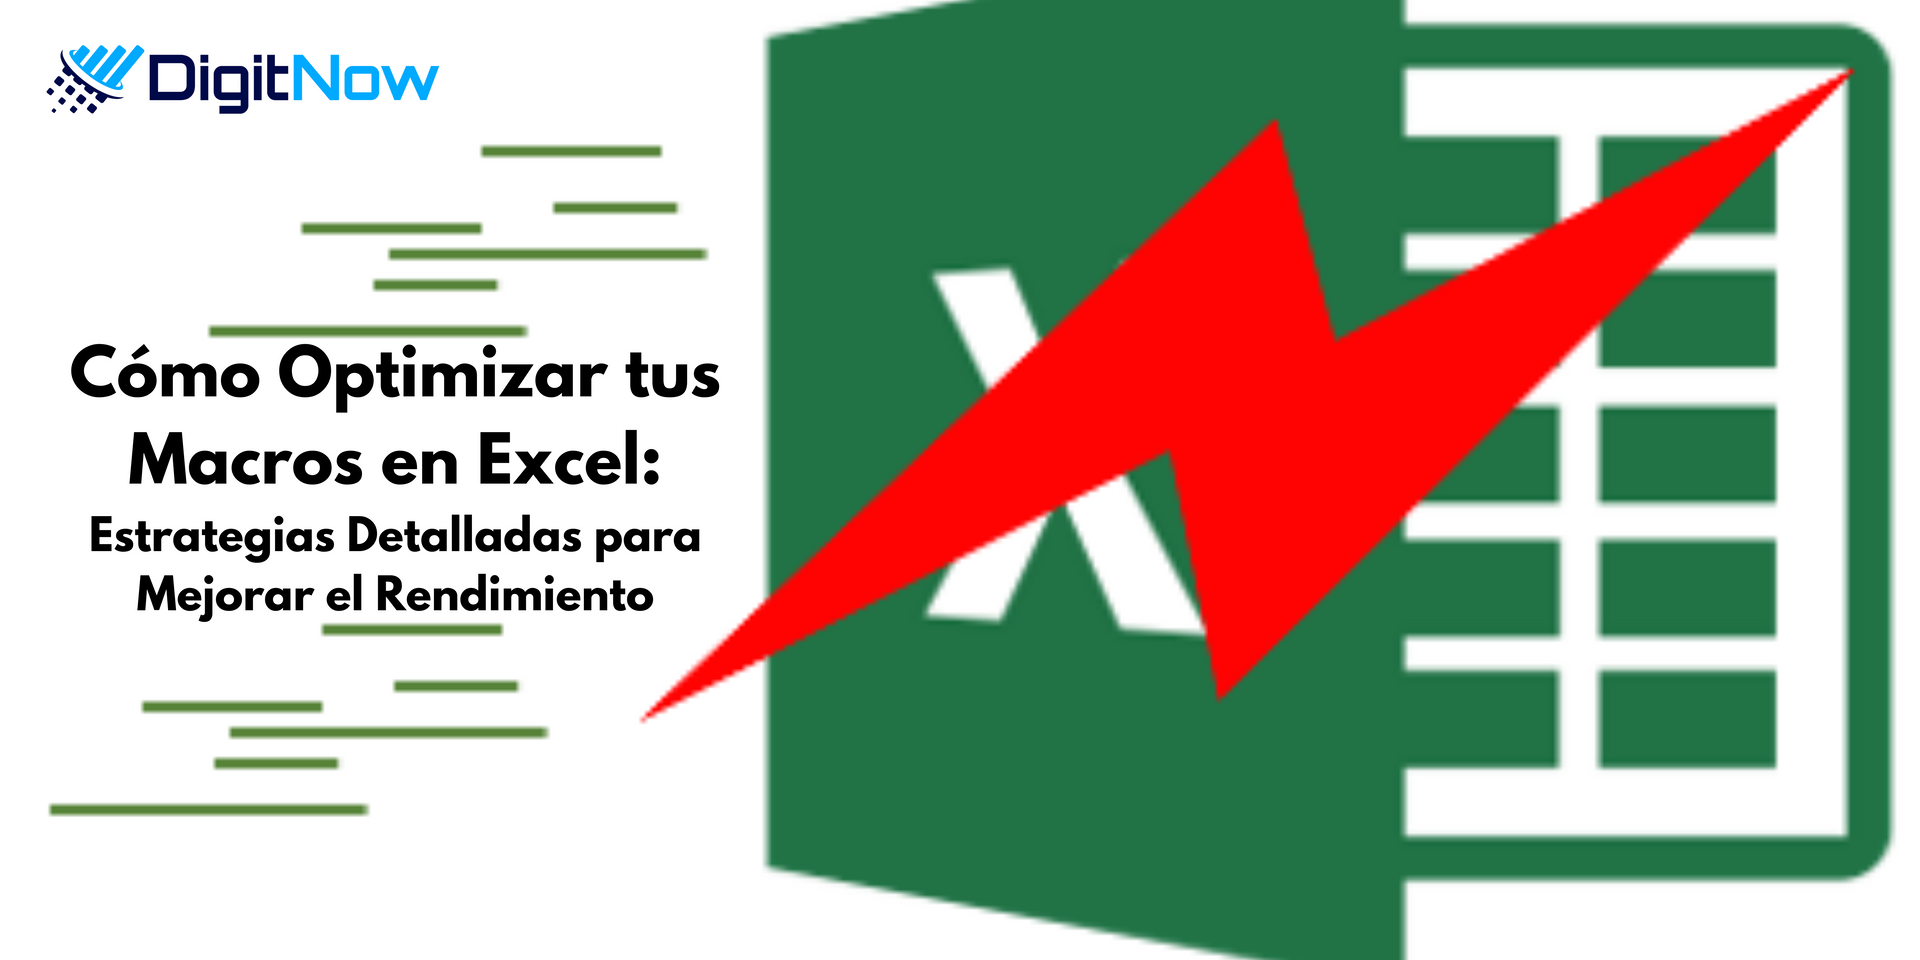 Transforma tu Experiencia con Macros en Excel